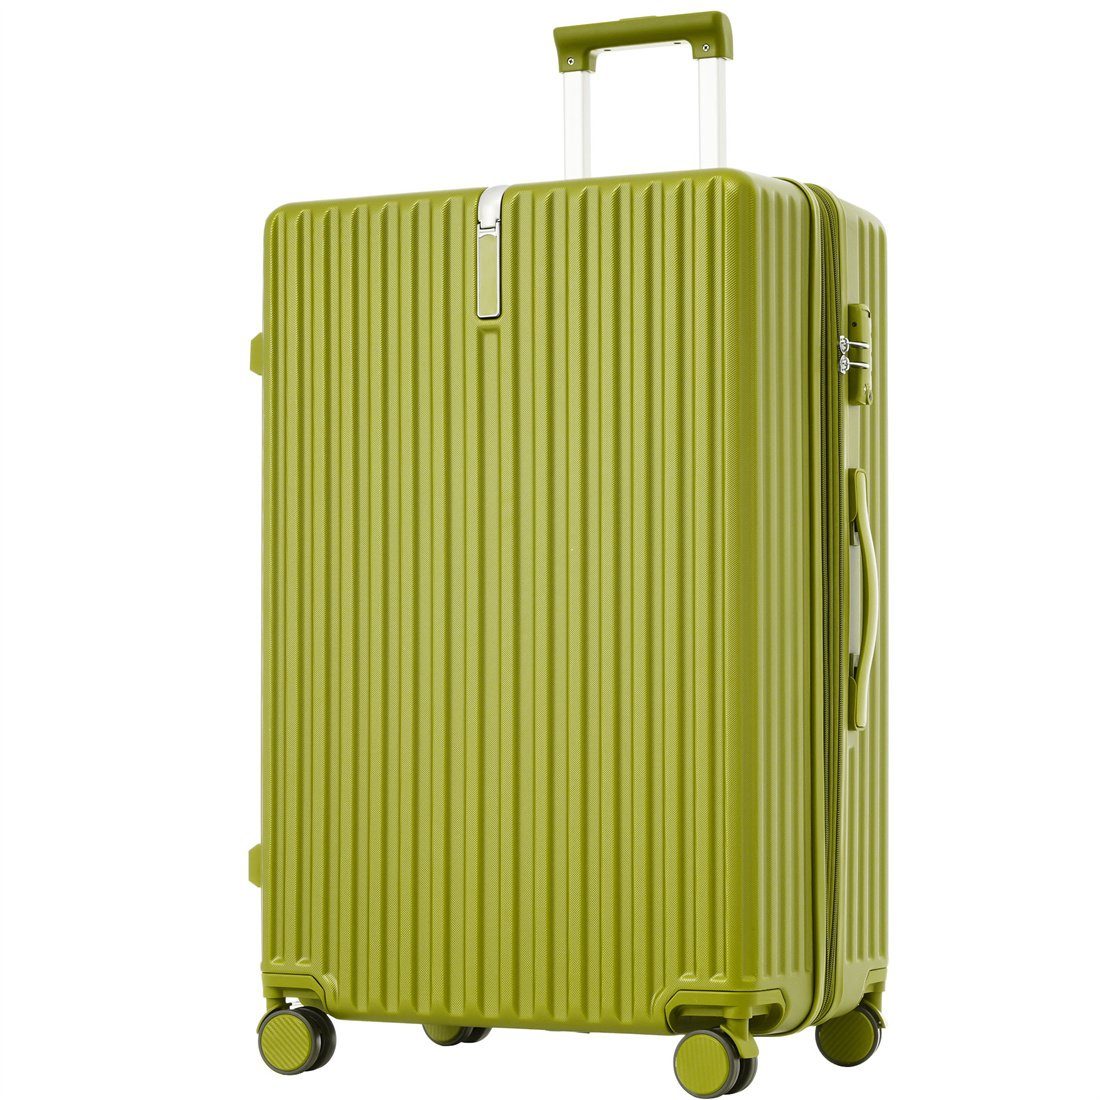 Koffer grün DÖRÖY Hartschalen-Koffer,Rollkoffer,Reisekoffer,65*43*28cm,